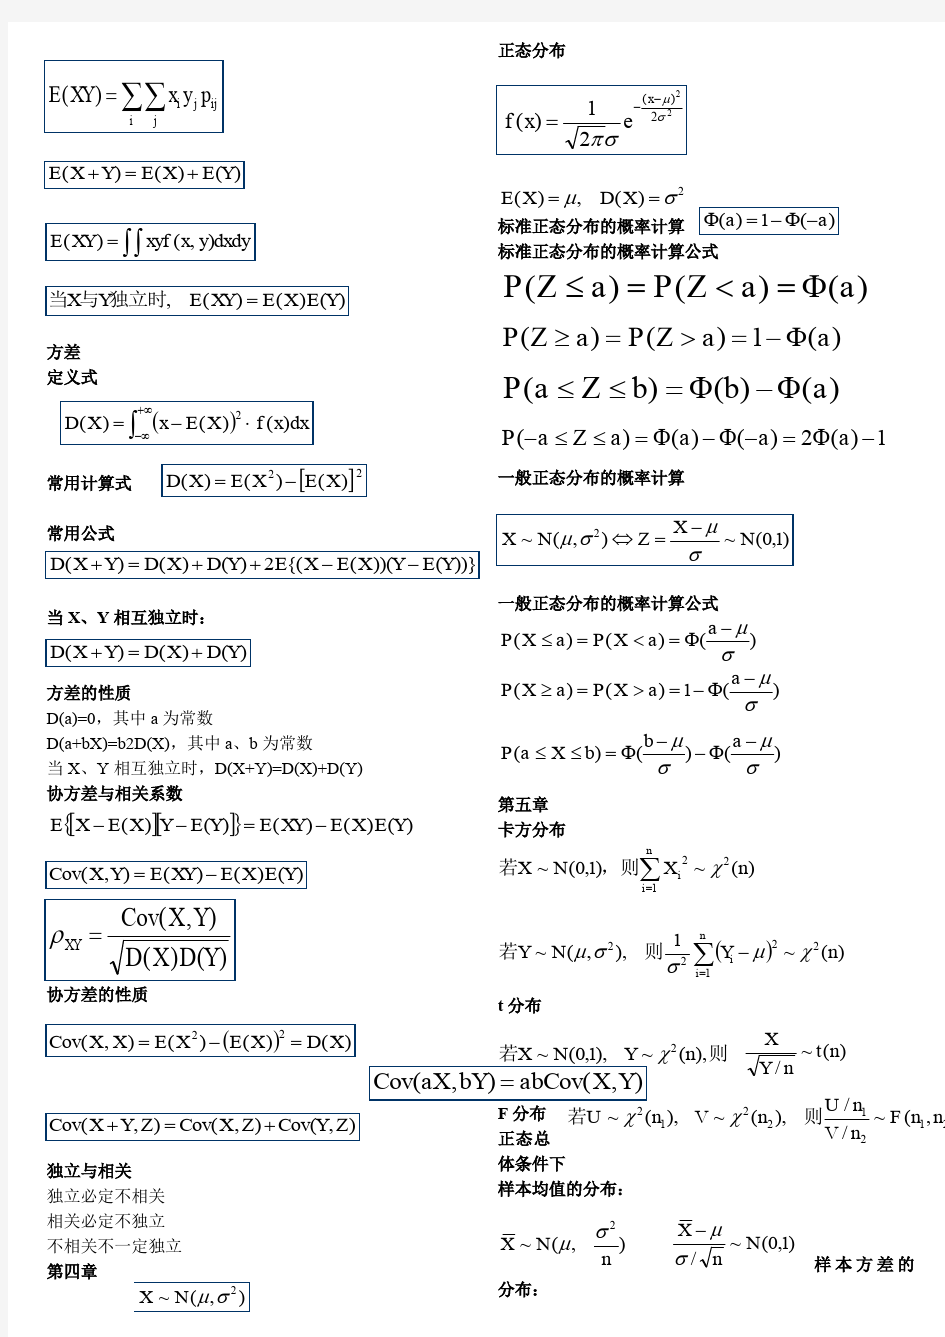 概率论与数理统计公式总结.pdf